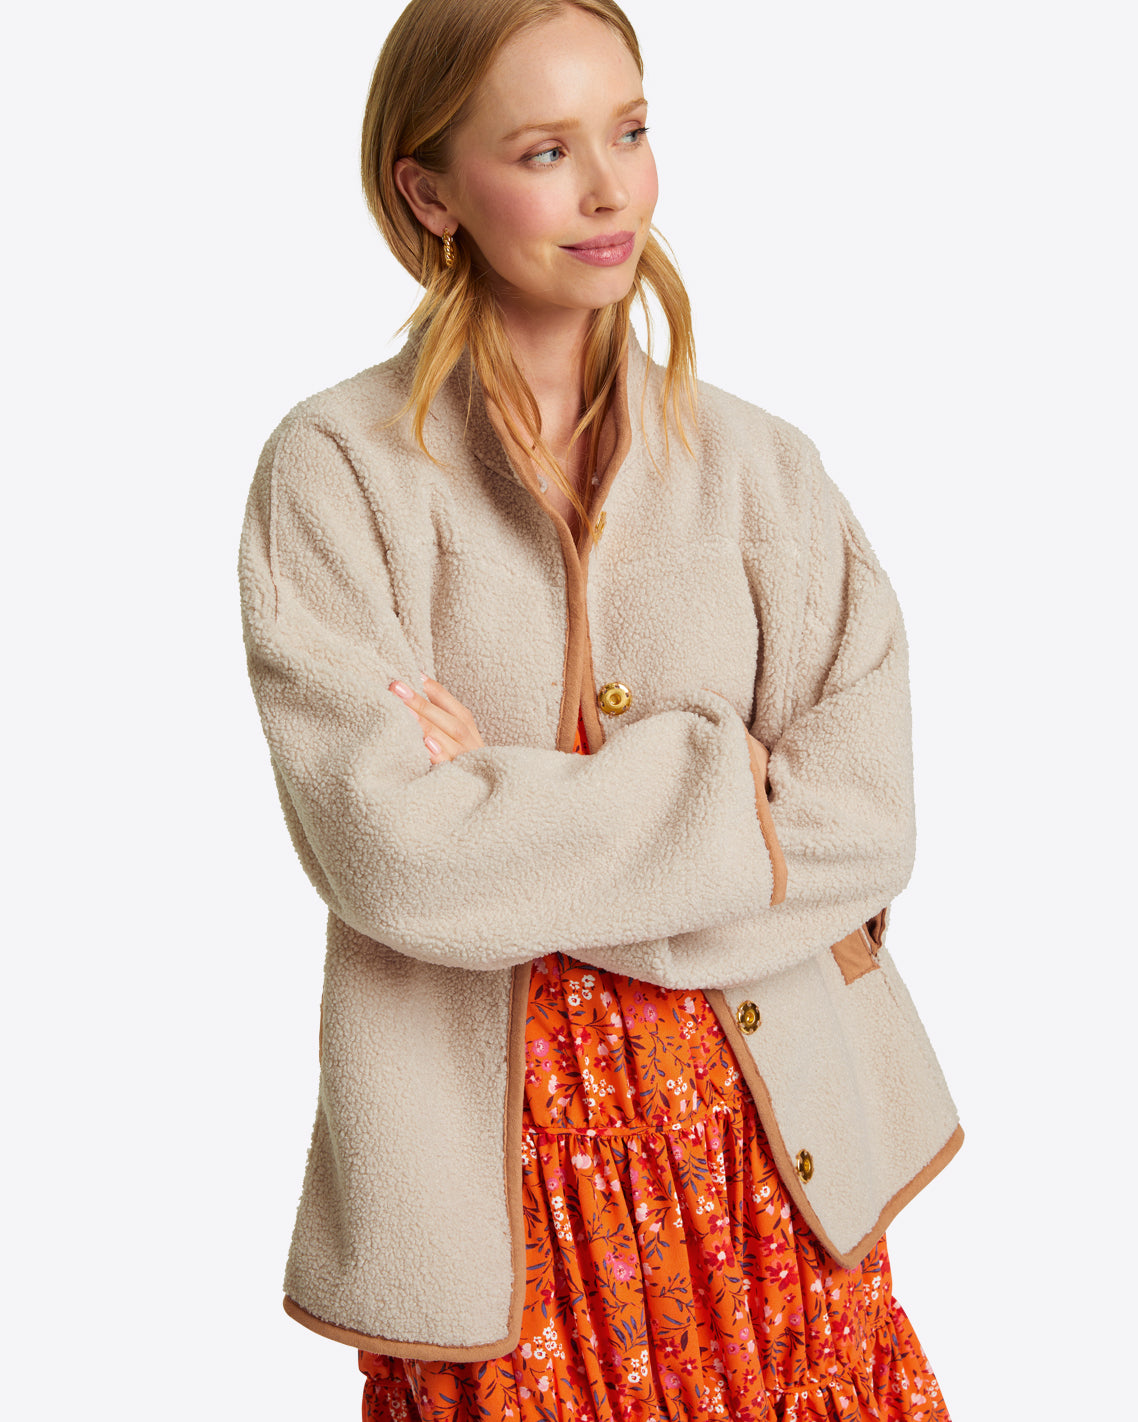 Reversible Long Hooded Wrap Coat - Women - Ready-to-Wear